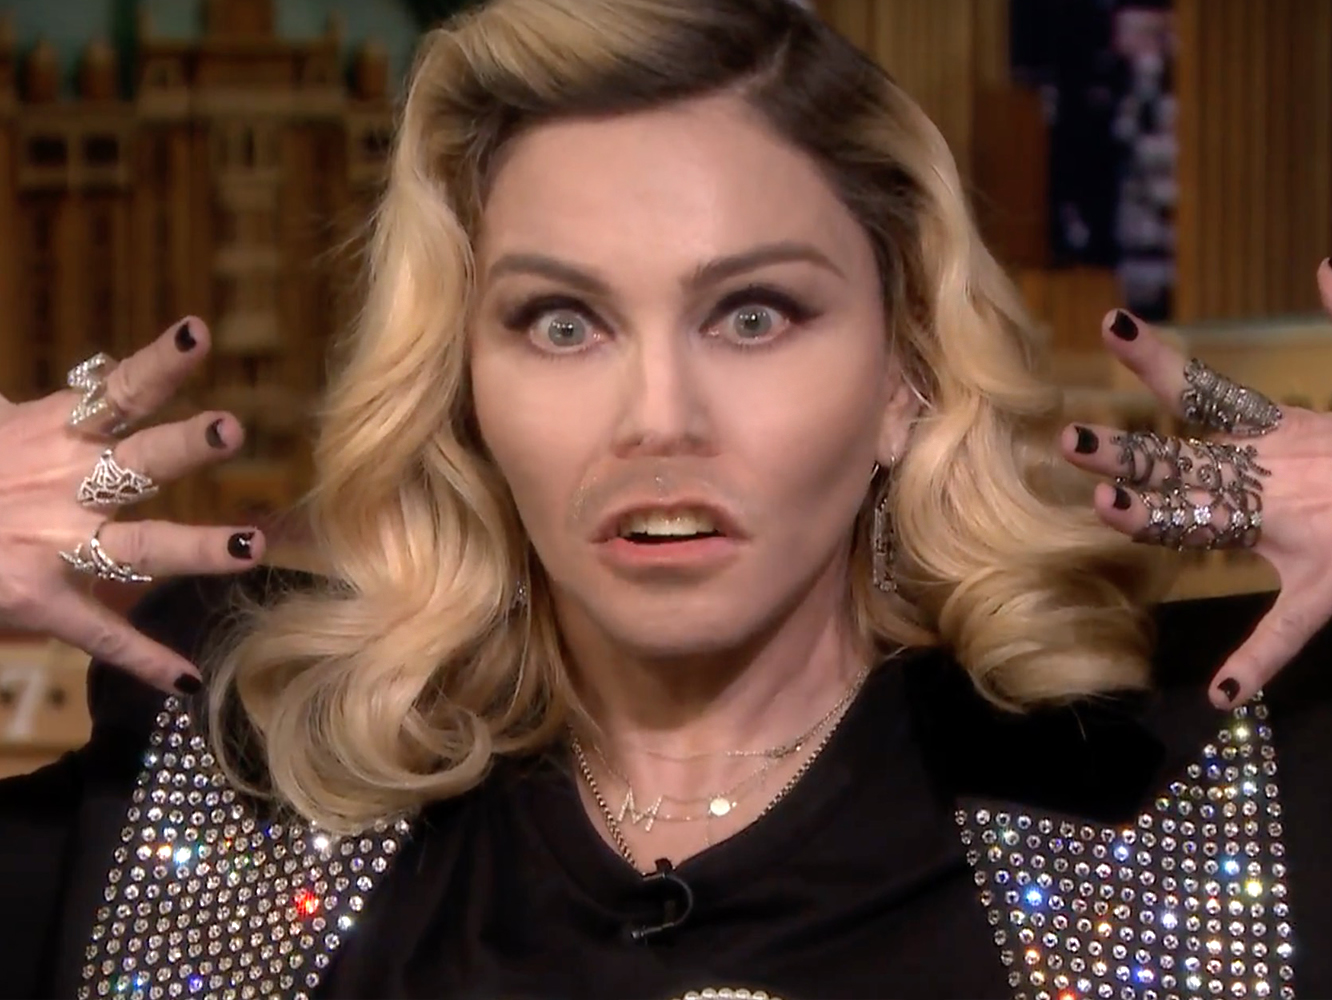  Madonna «imita» a su prima la de cuenca en el show de Jimmy Fallon